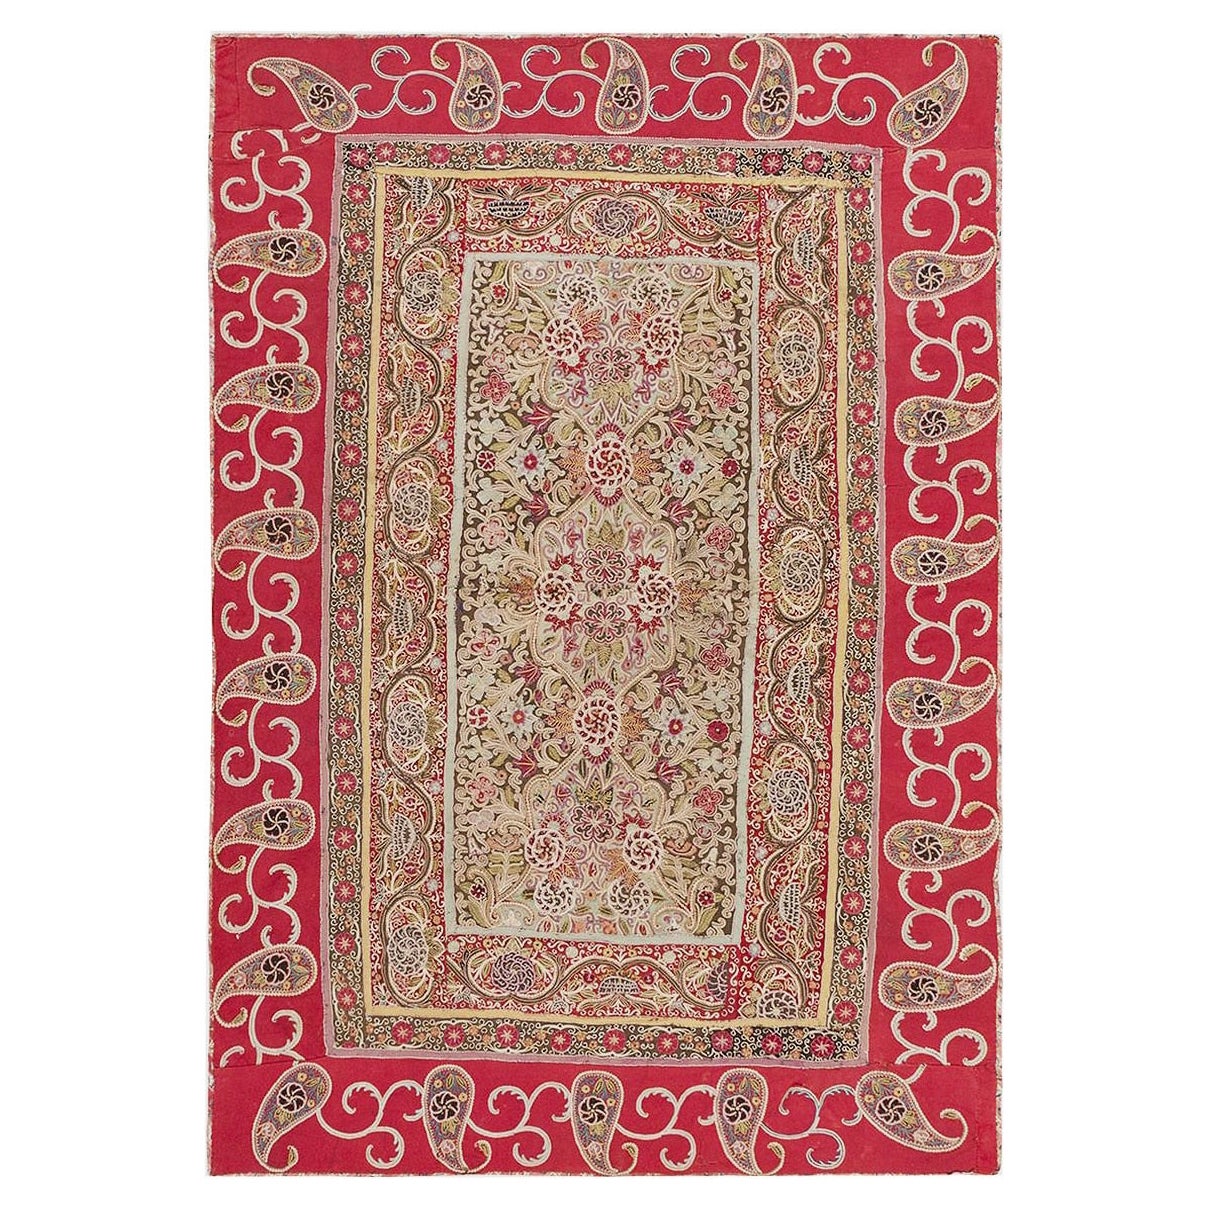 Antique Persian Paisley Rashti Embroidery Textile 3'10" x 5'7"